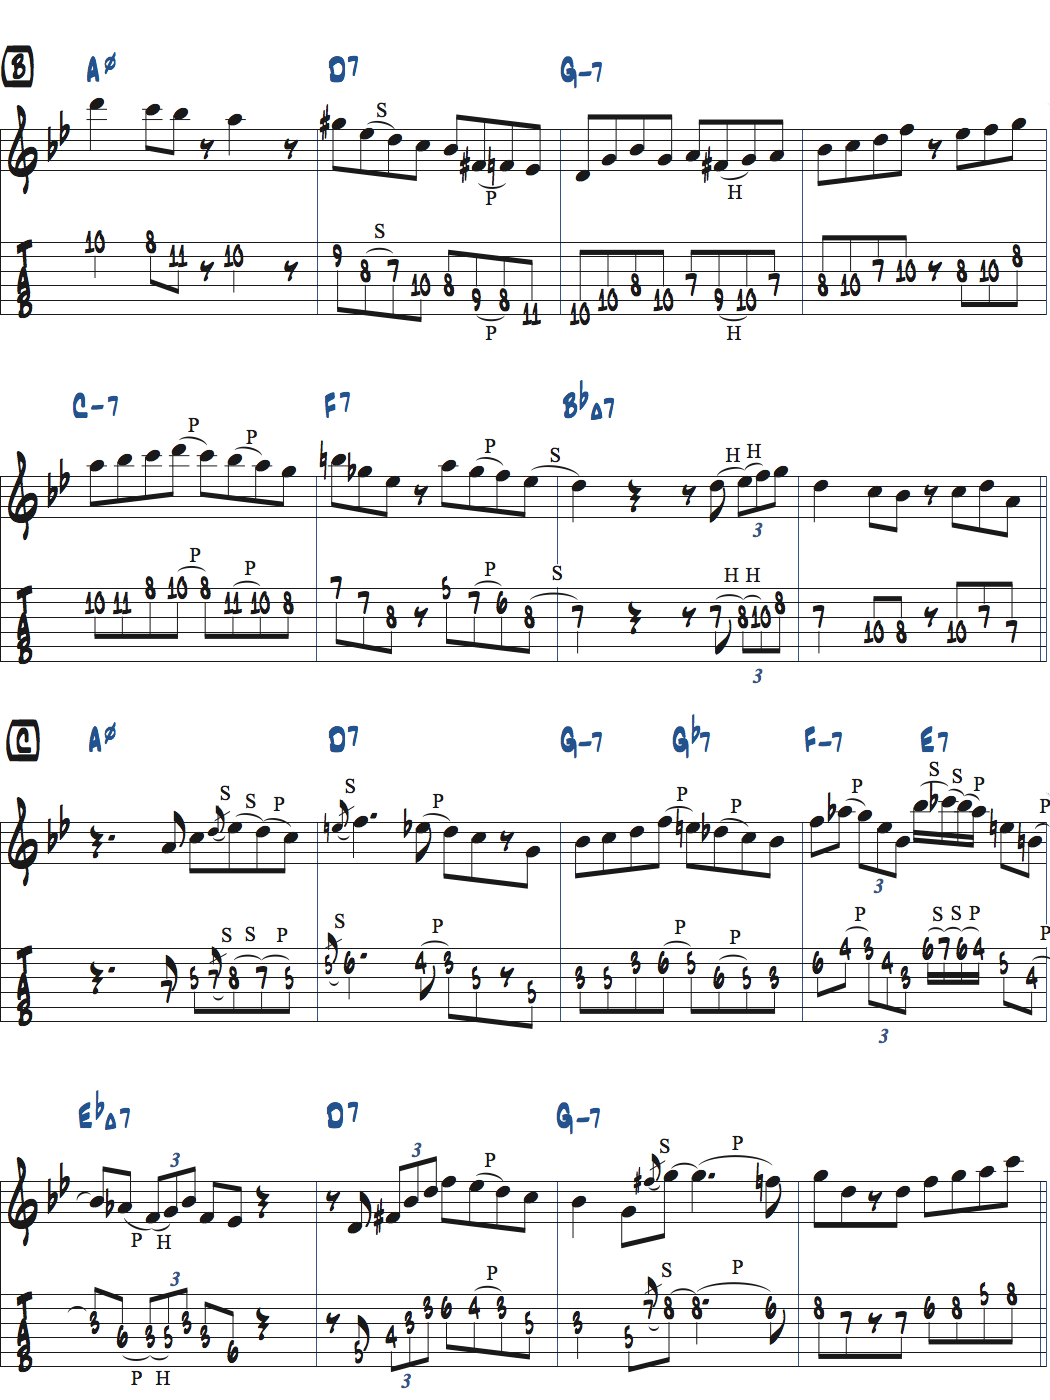 枯葉のアドリブ例楽譜ページ2